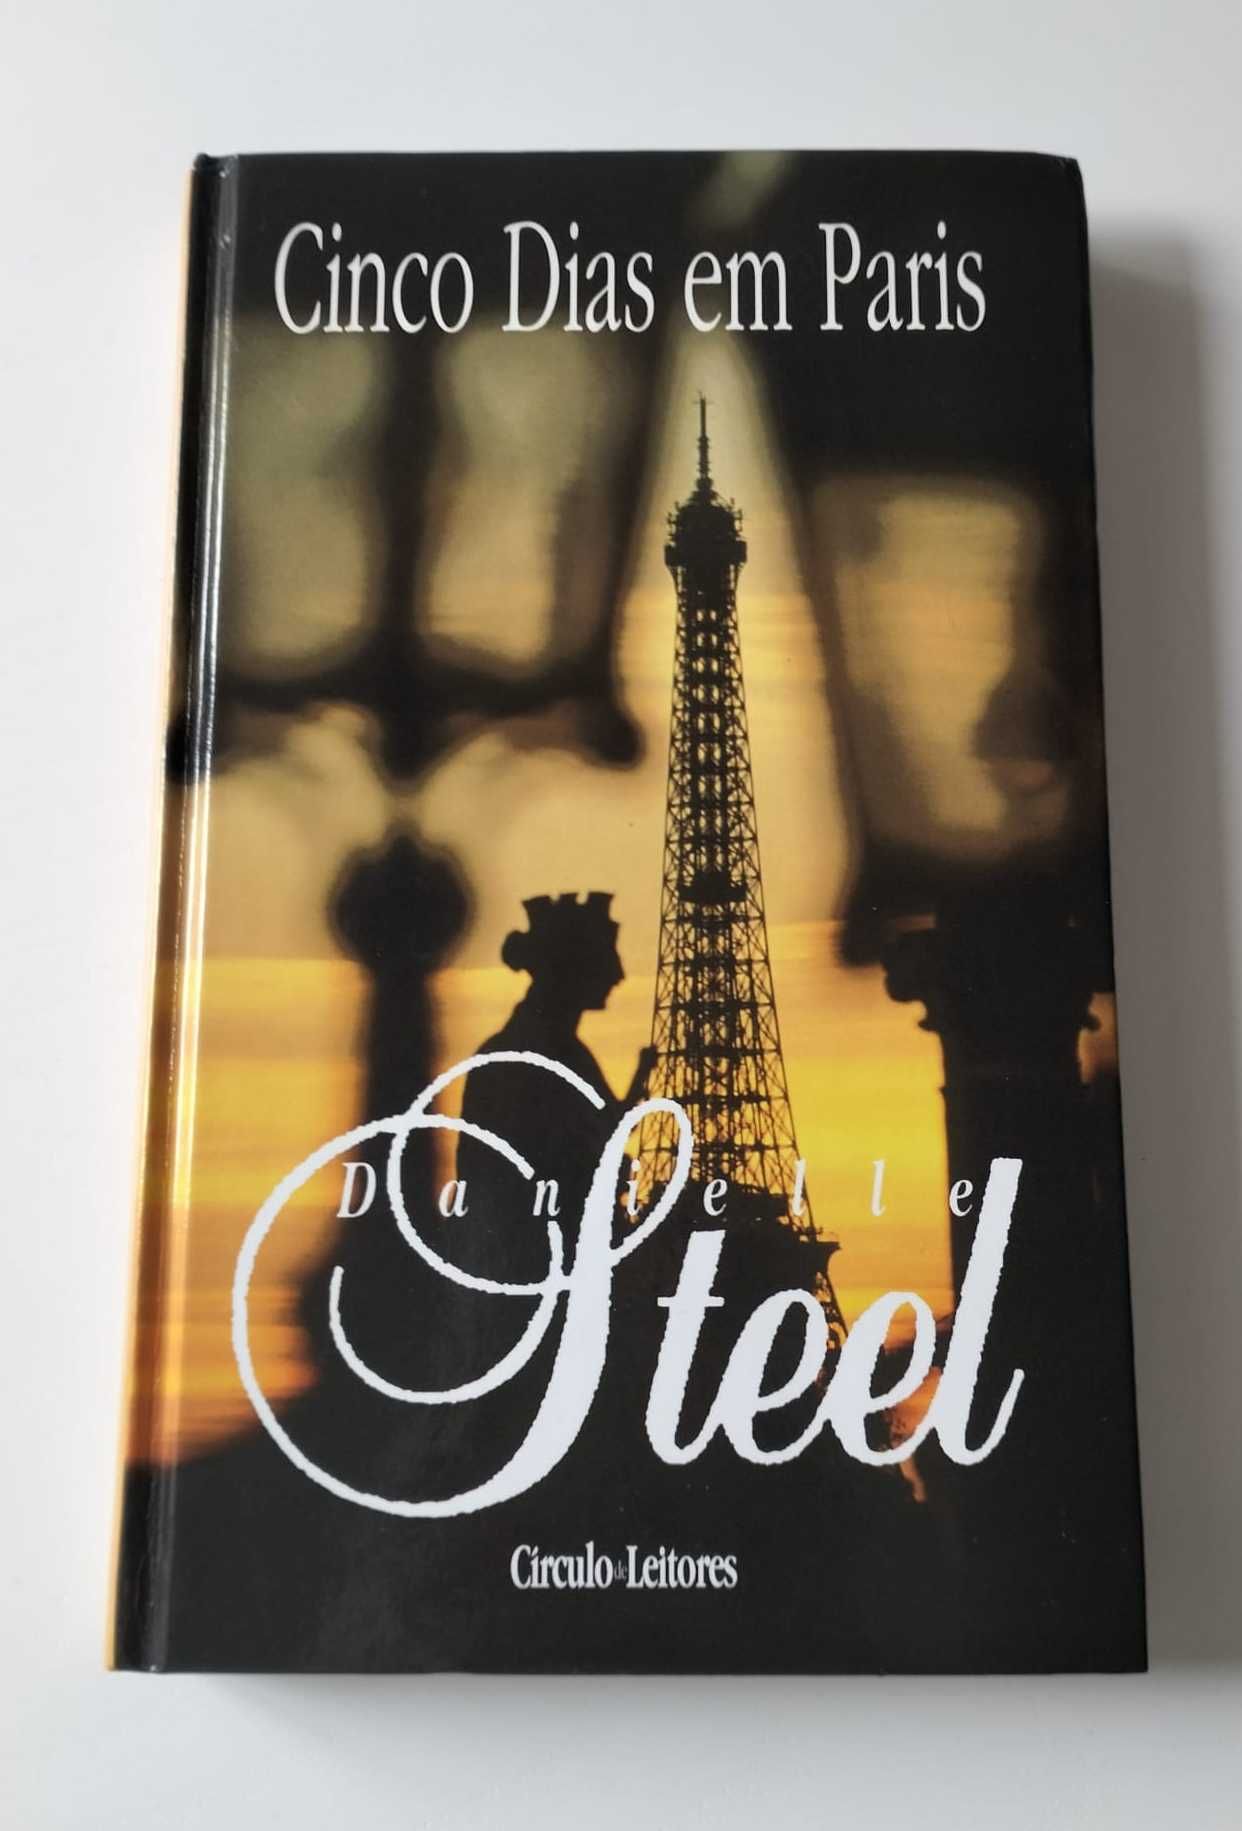 Livro "Cinco Dias em Paris" - Danielle Steel